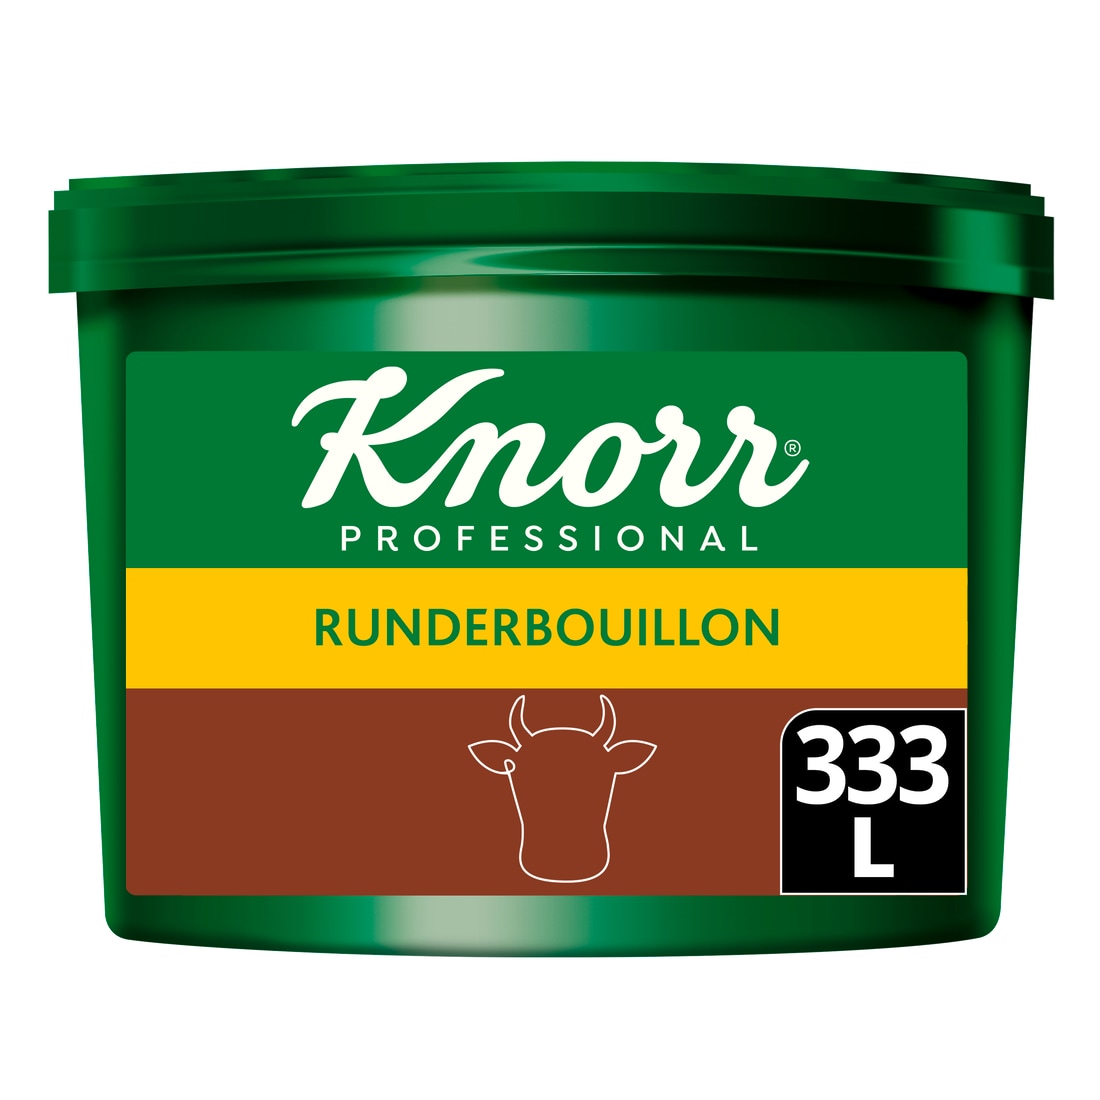 Knorr Professional Runderbouillon poeder krachtig 333L - 